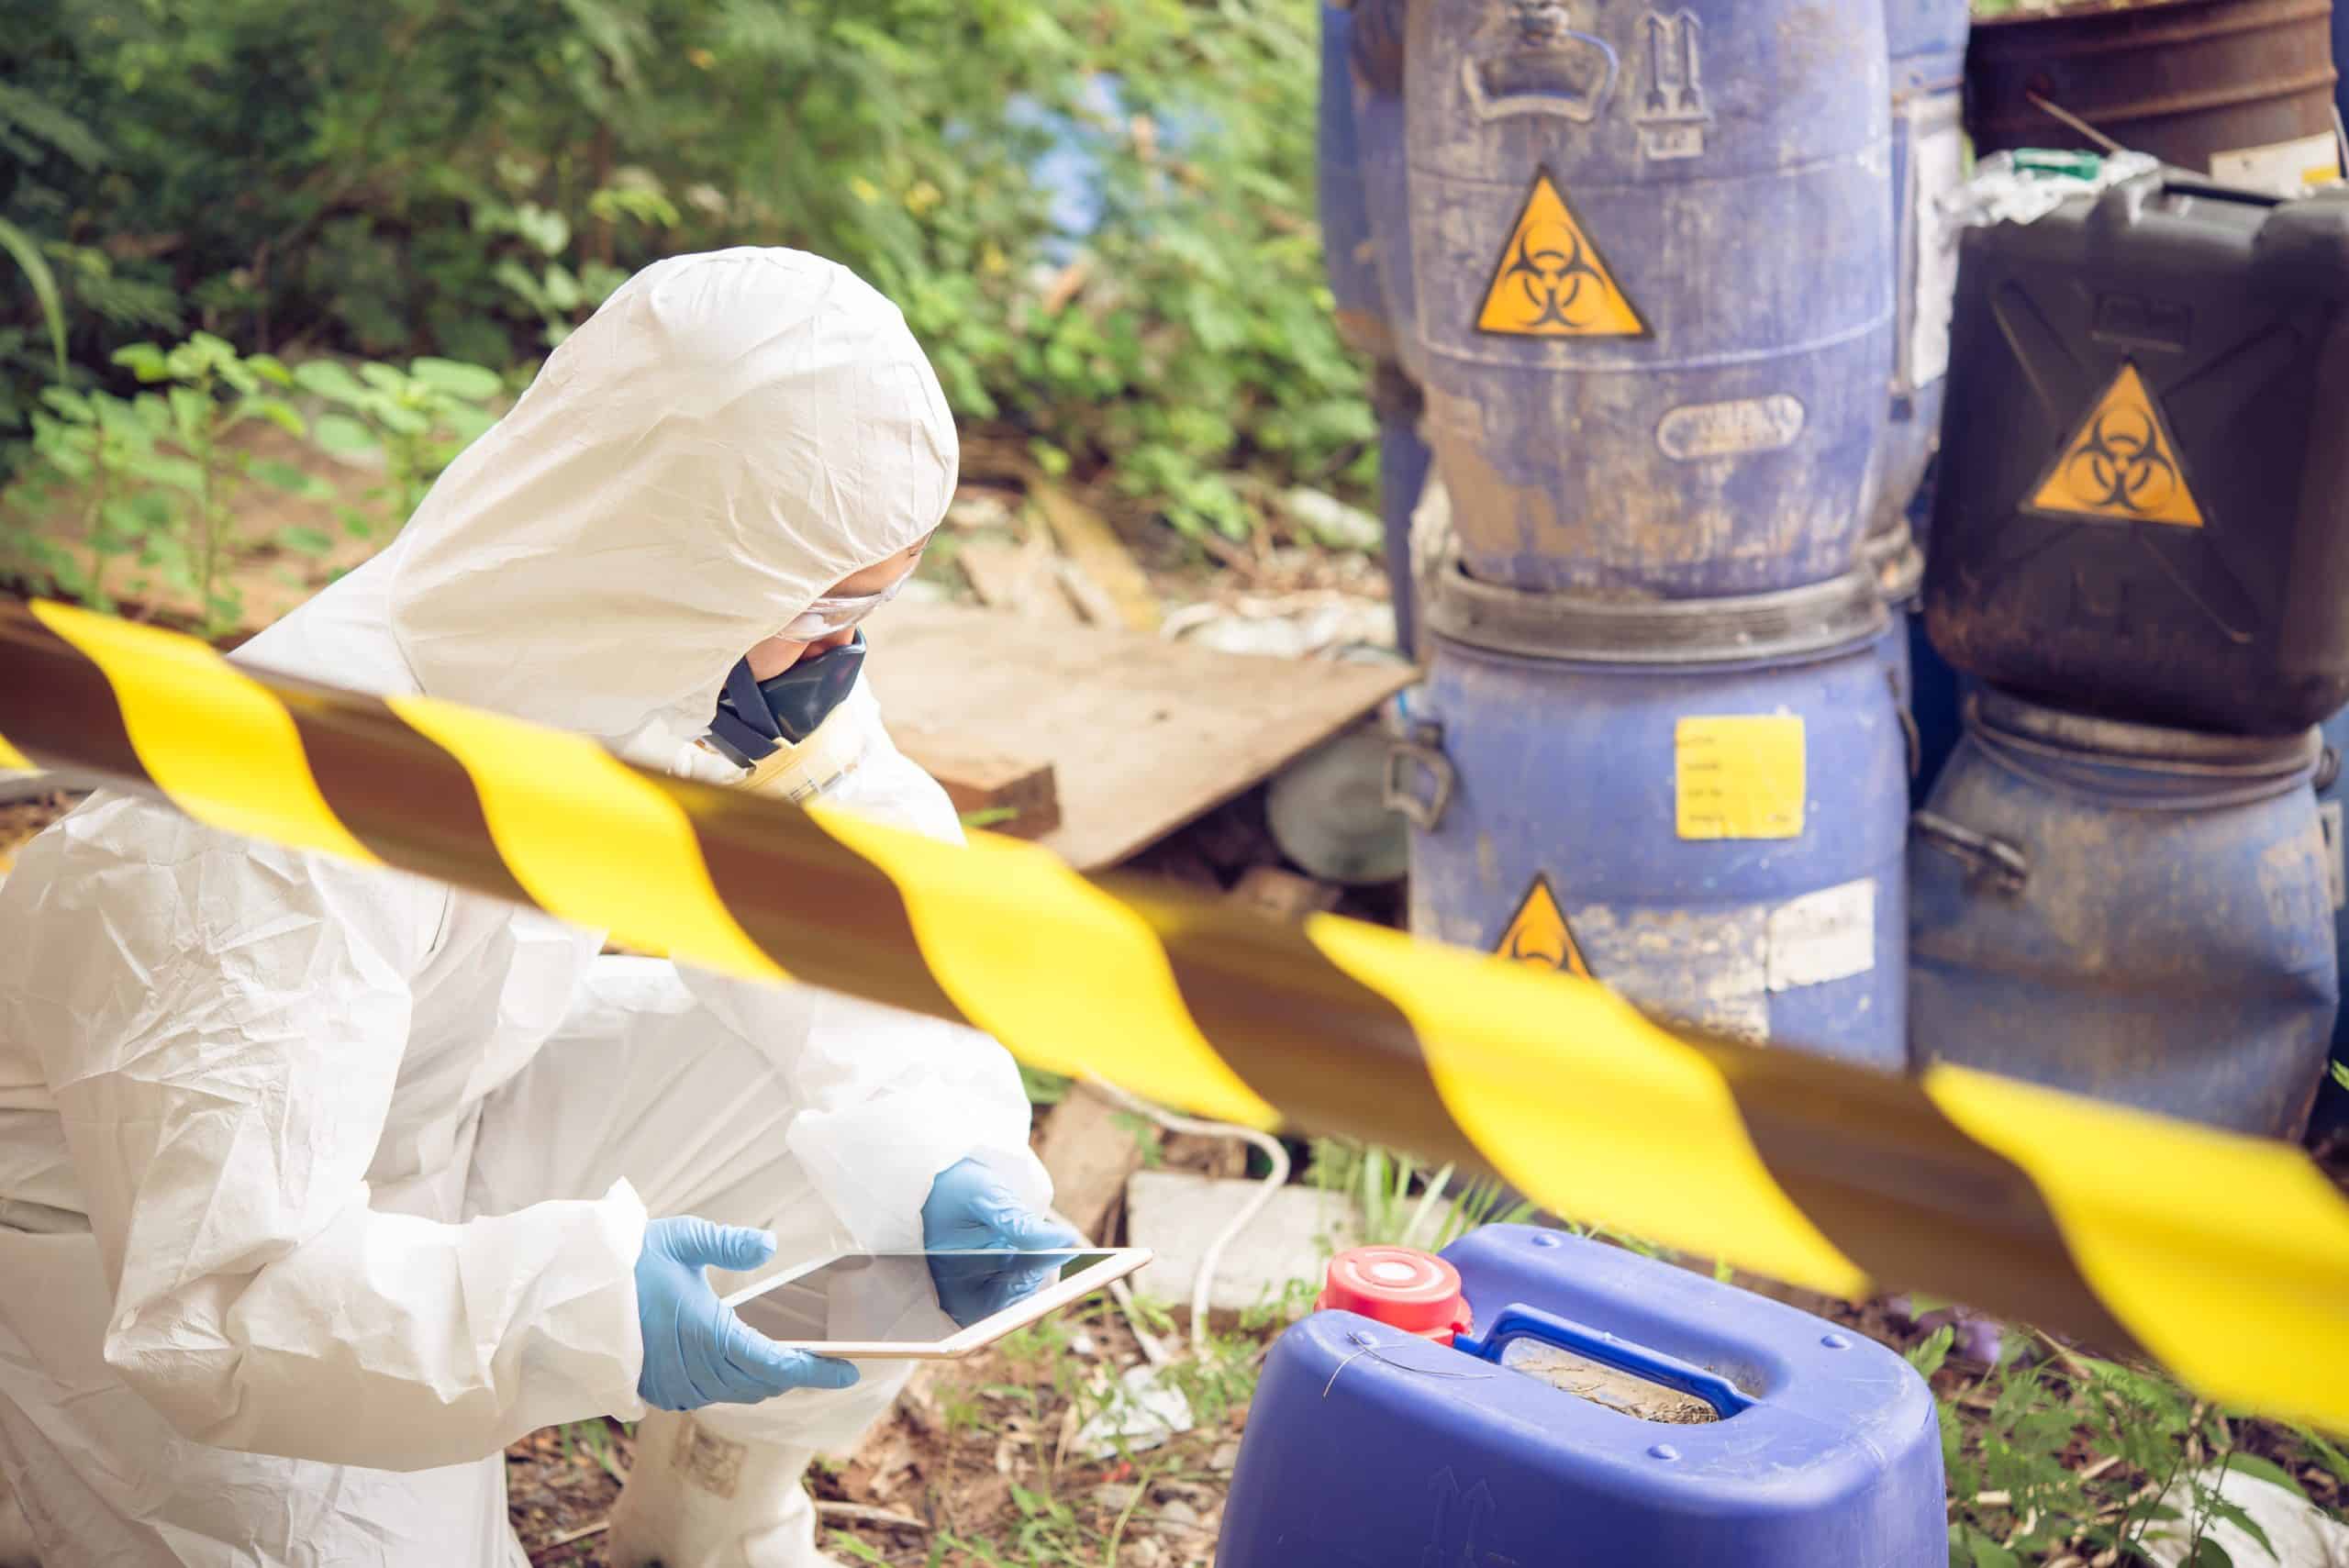 worker in biohazard_hazmat suit with chemicals